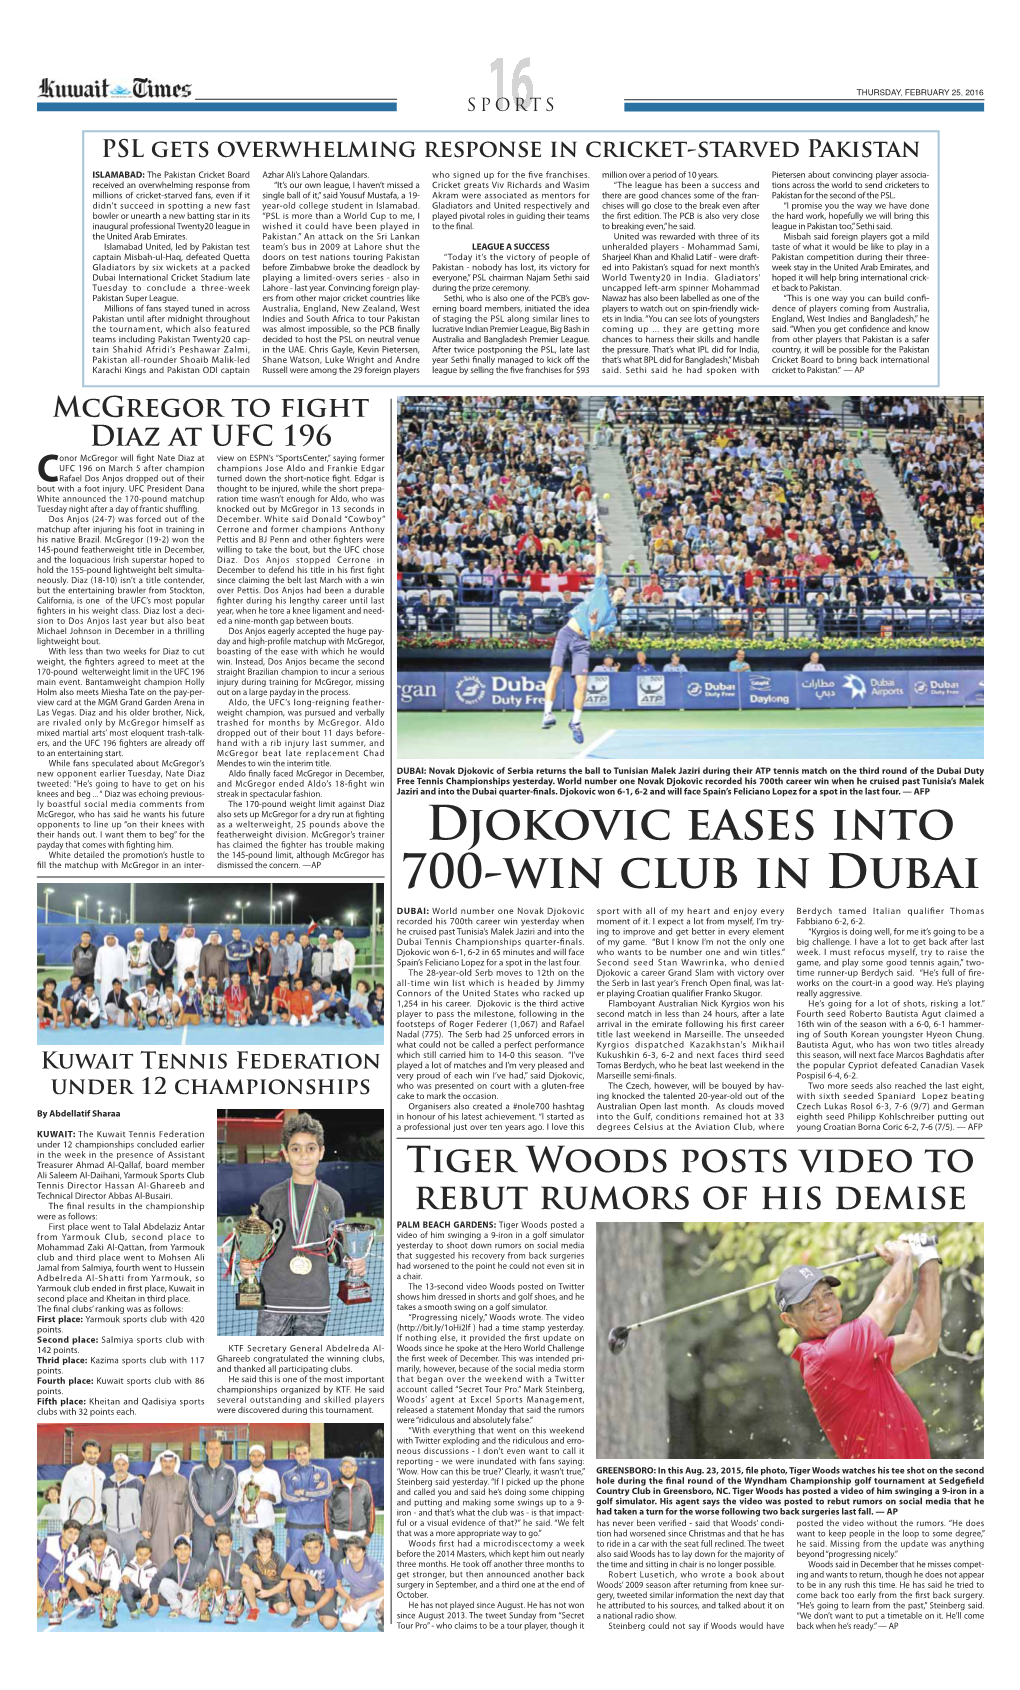 Djokovic Eases Into 700-Win Club in Dubai